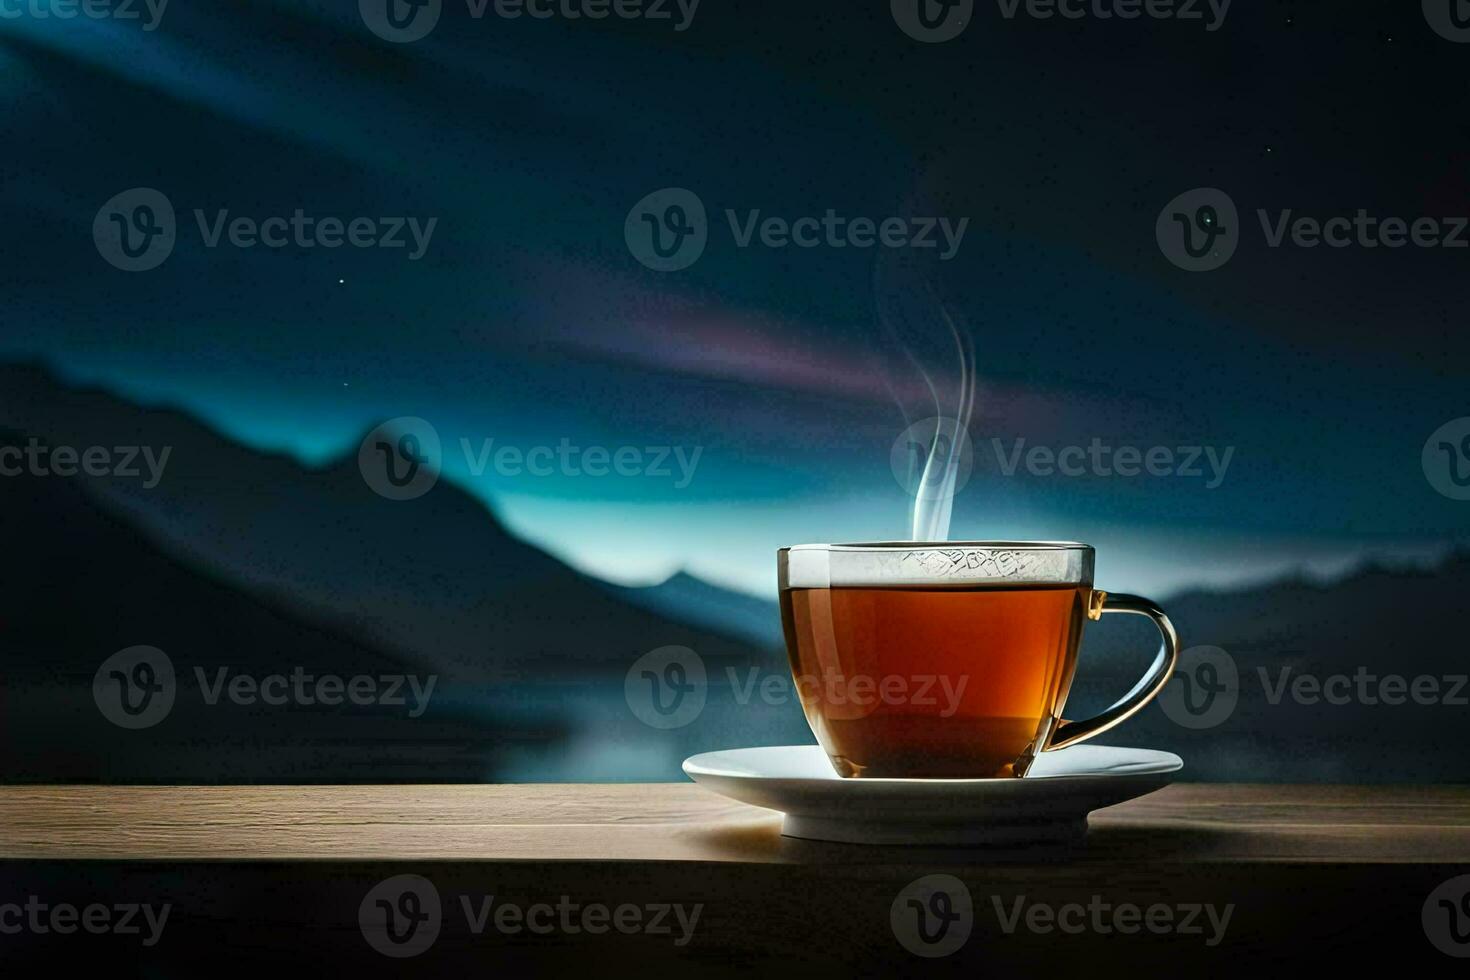 en kopp av te på en trä- tabell i främre av en sjö på natt. ai-genererad foto